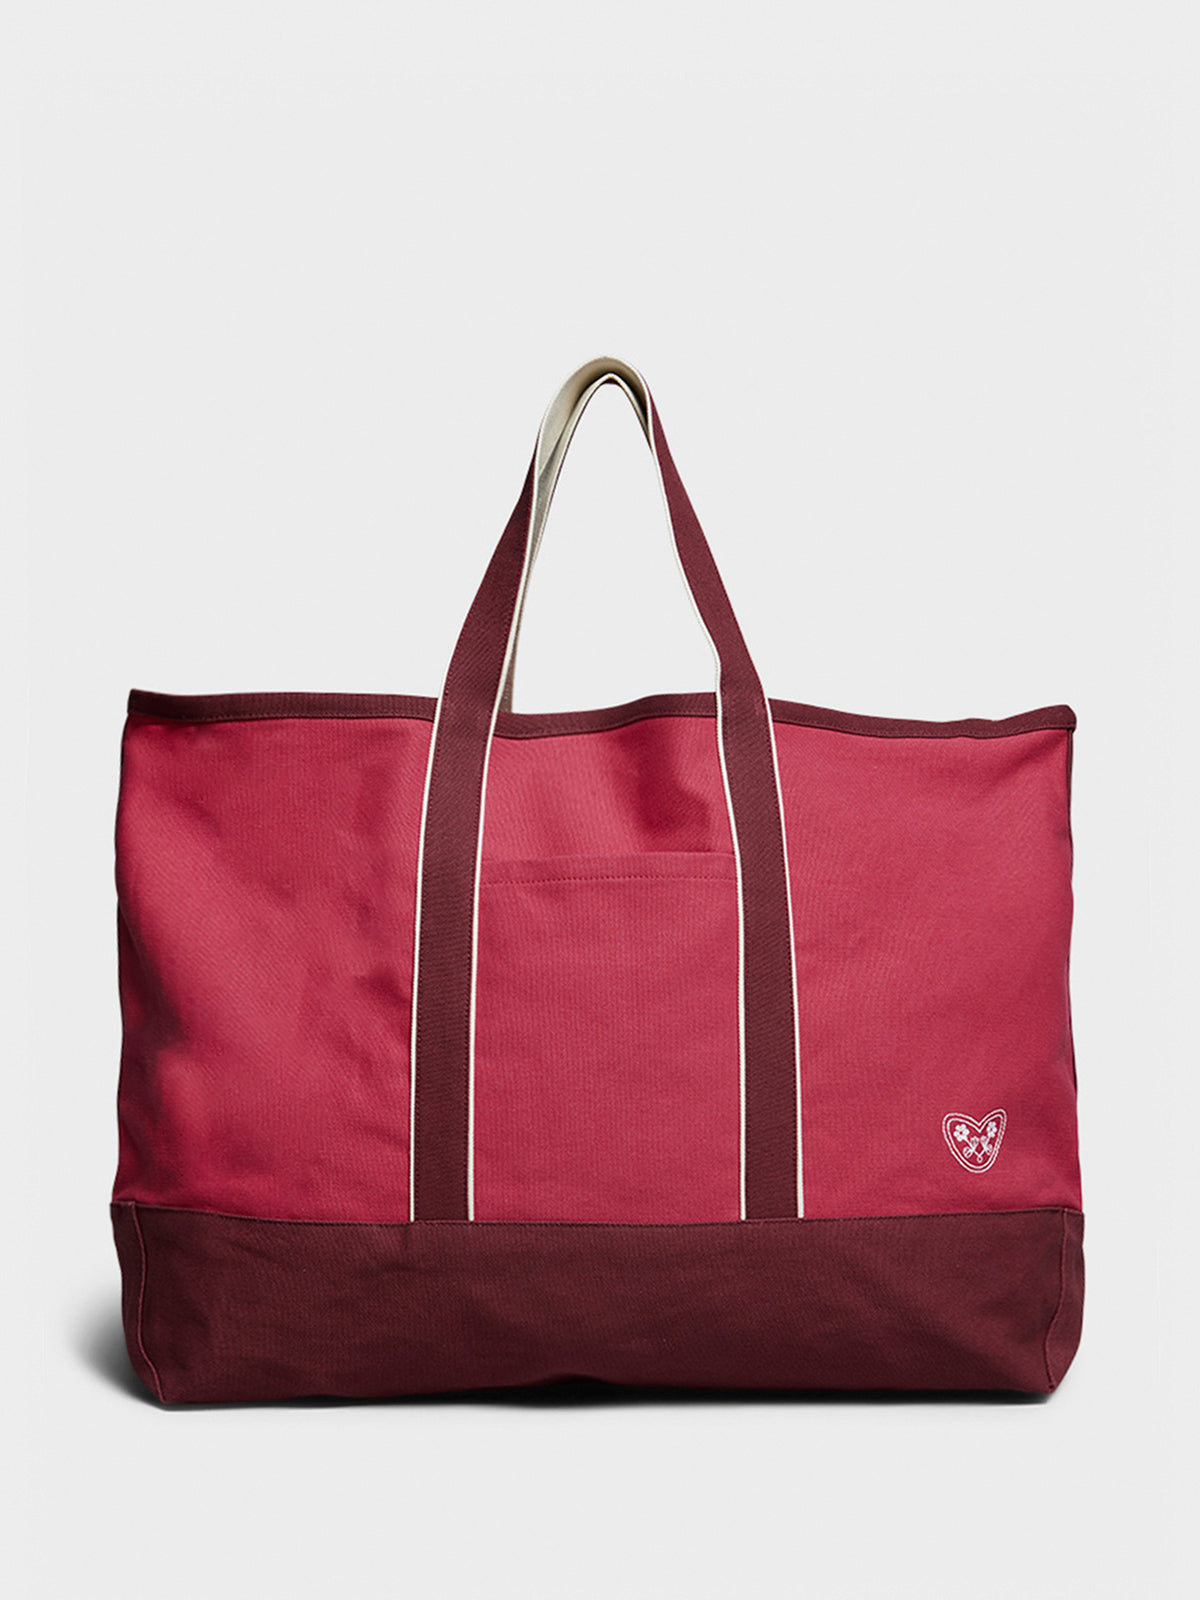 Easy Bag Large Taske i Rød og Bourgogne